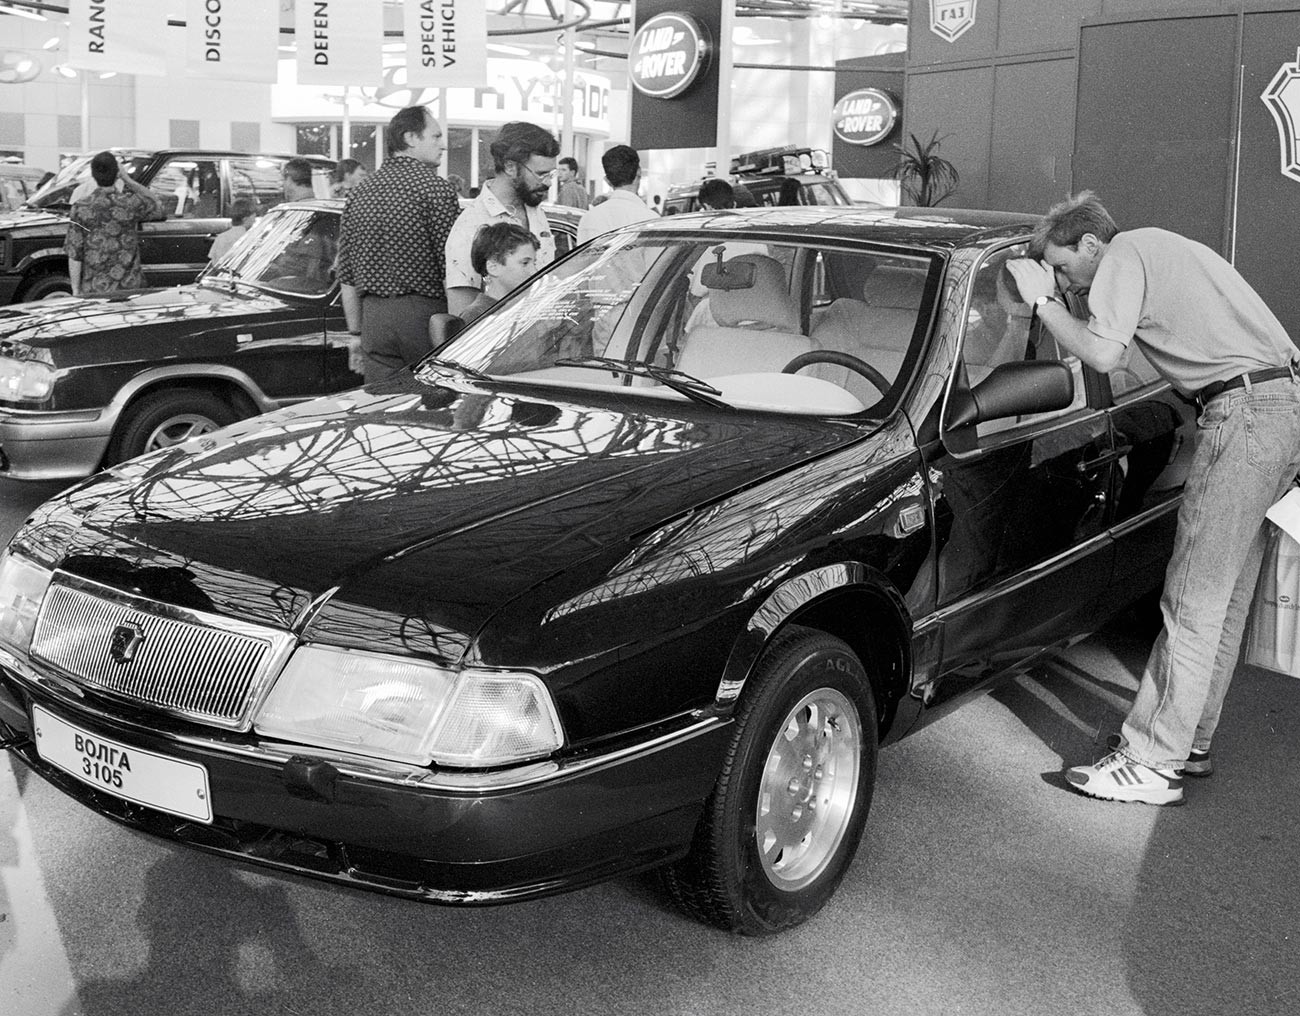 Posjetitelji Međunarodne izložbe automobila 1995. razgledaju automobil GAZ-3105 